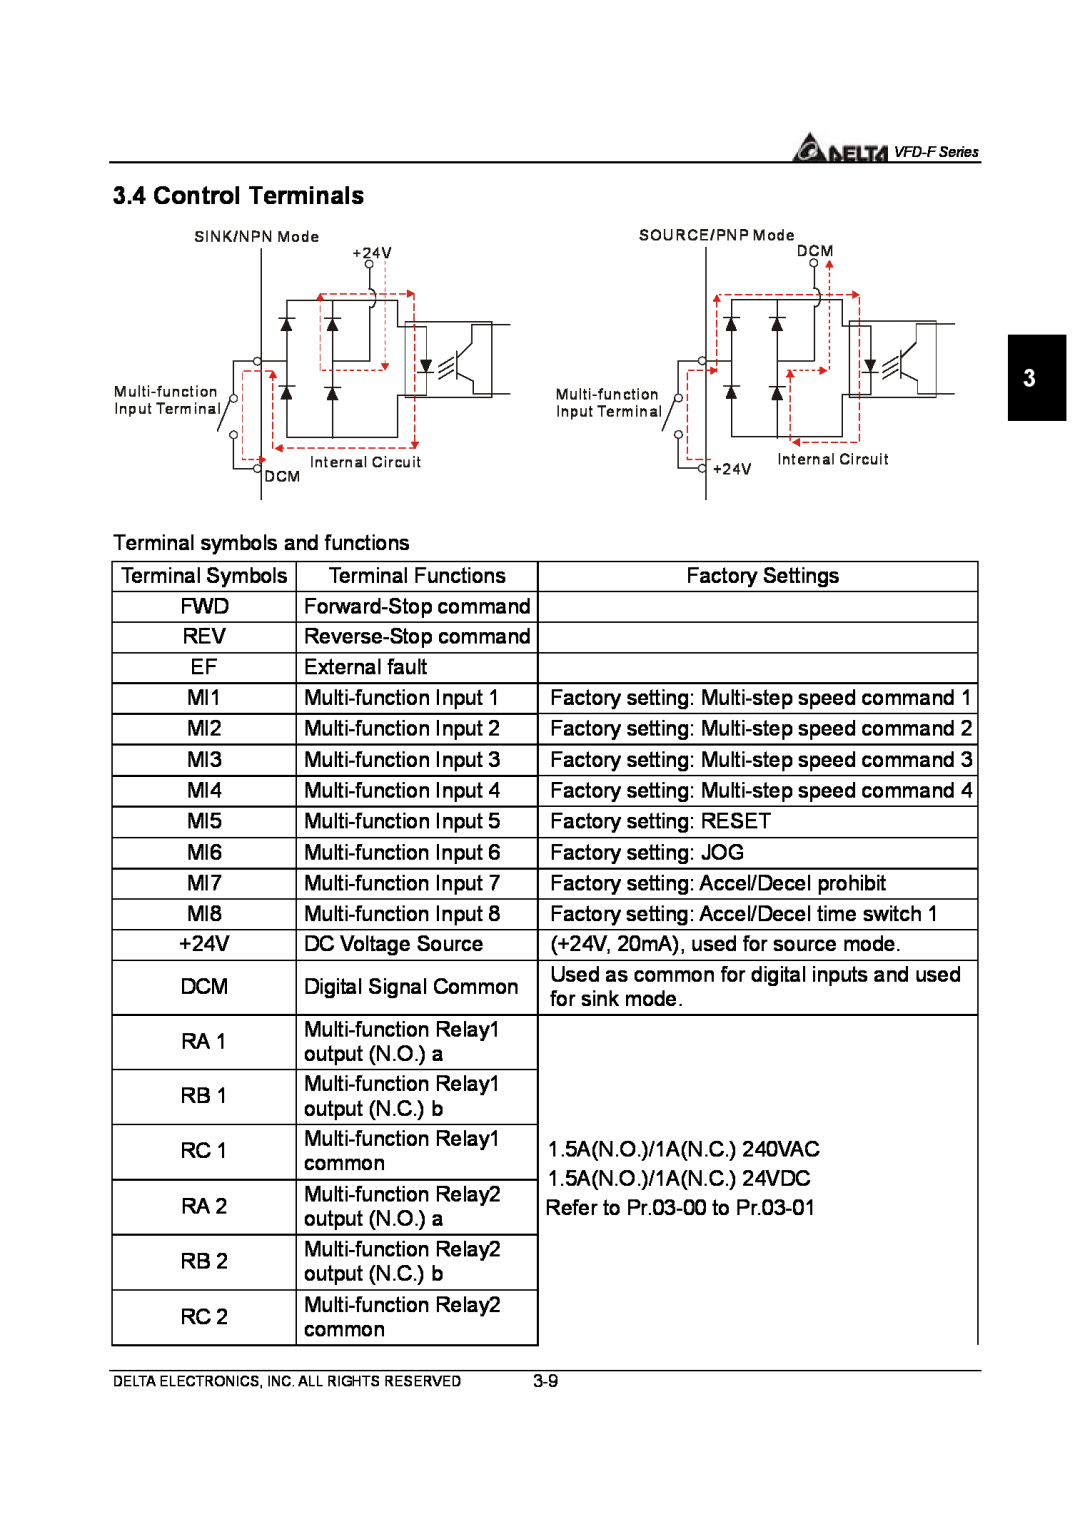 Delta Electronics VFD-F Series manual Control Terminals 